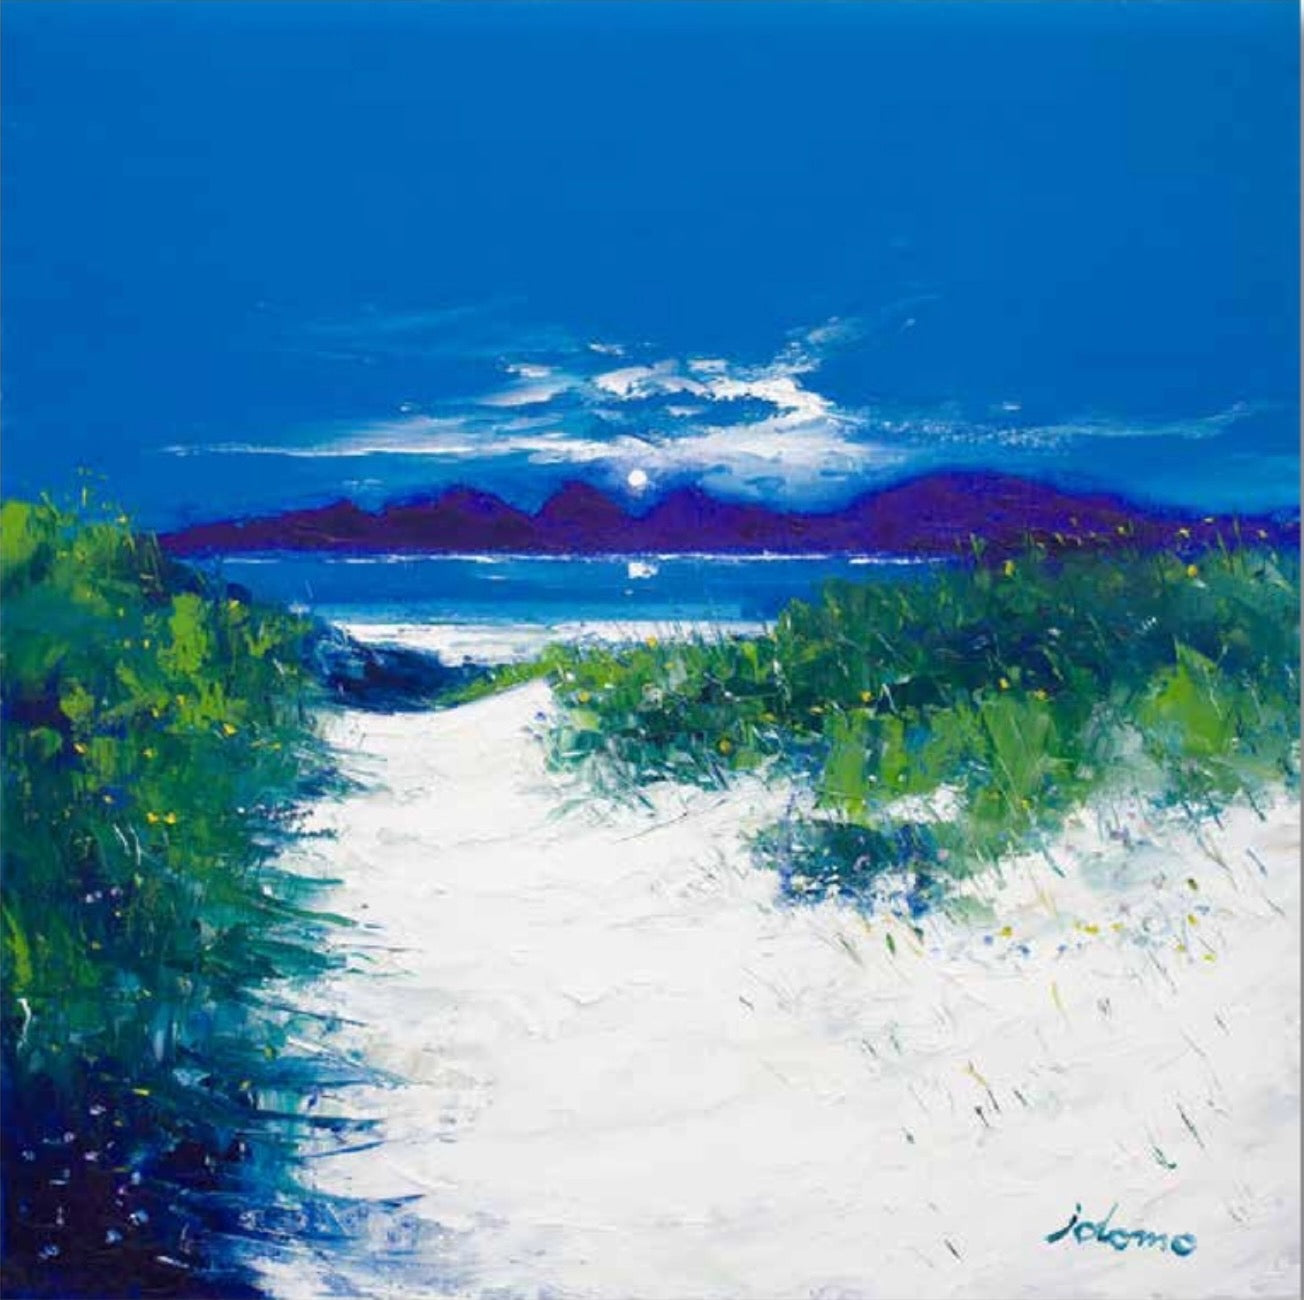 Beach Path, Luskentyre, isle of Harris by John Lowrie Morrison (JOLOMO) Framed Art